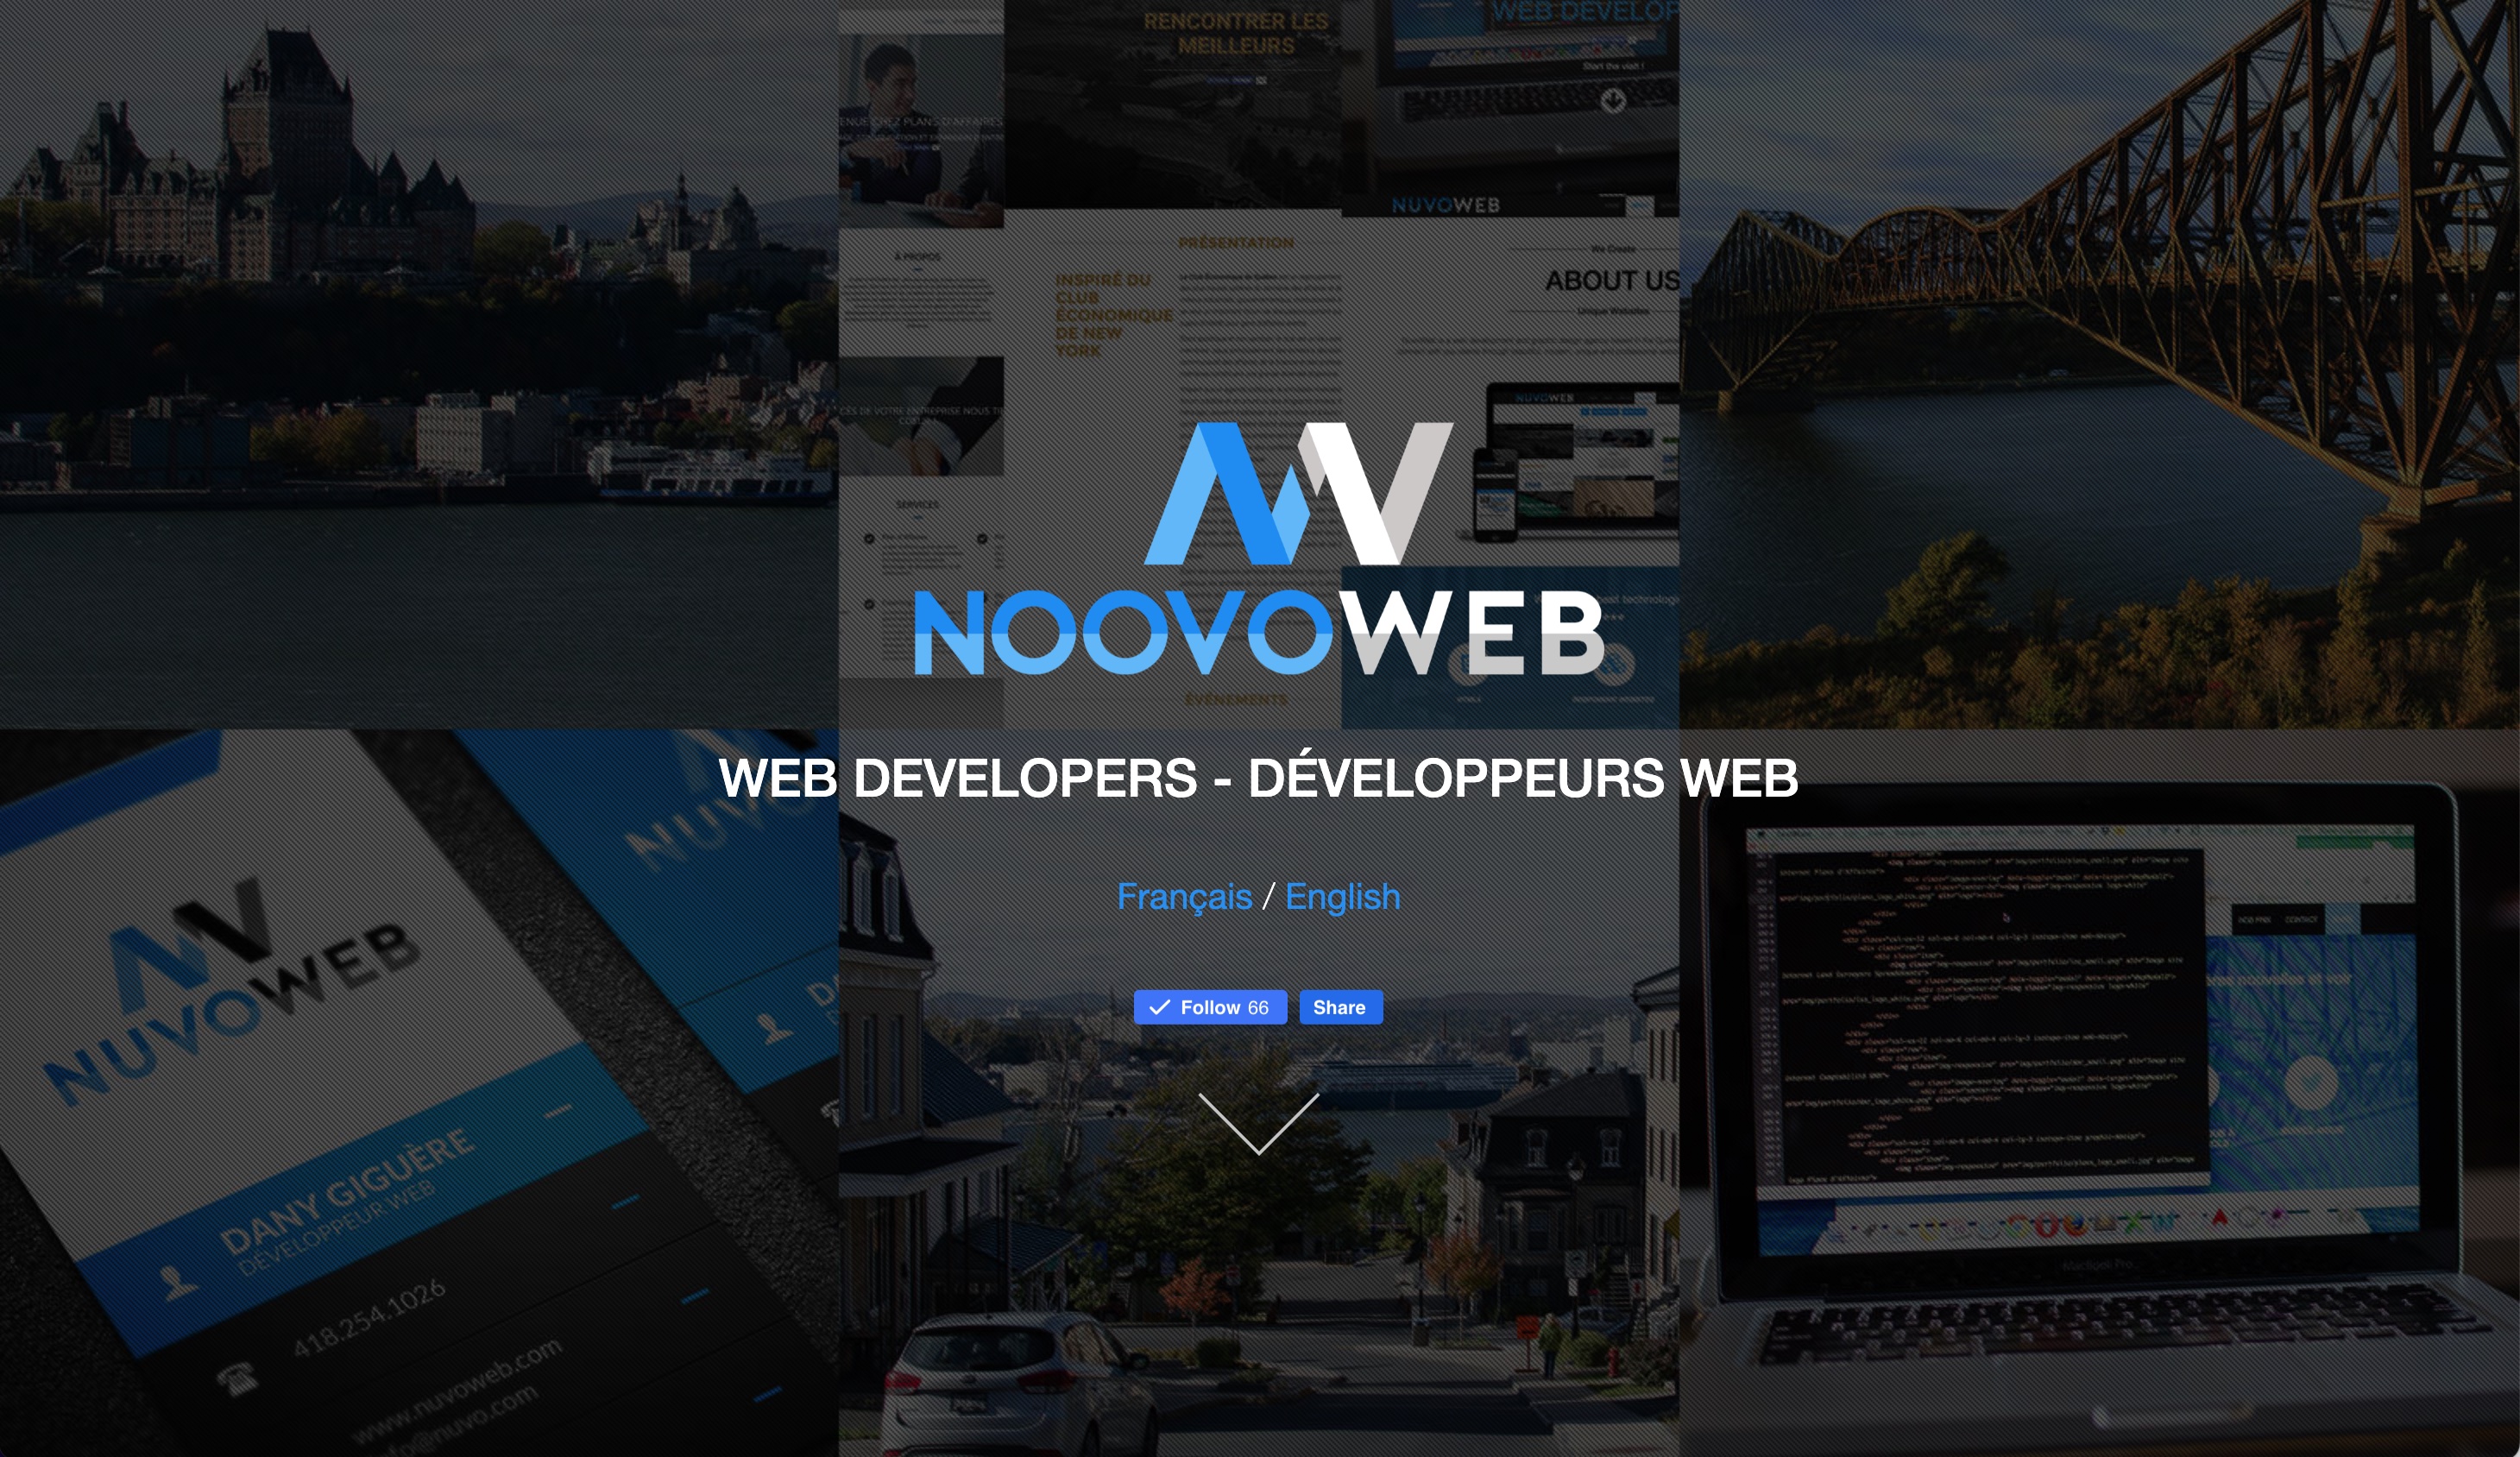 Image promotionnel de Noovoweb